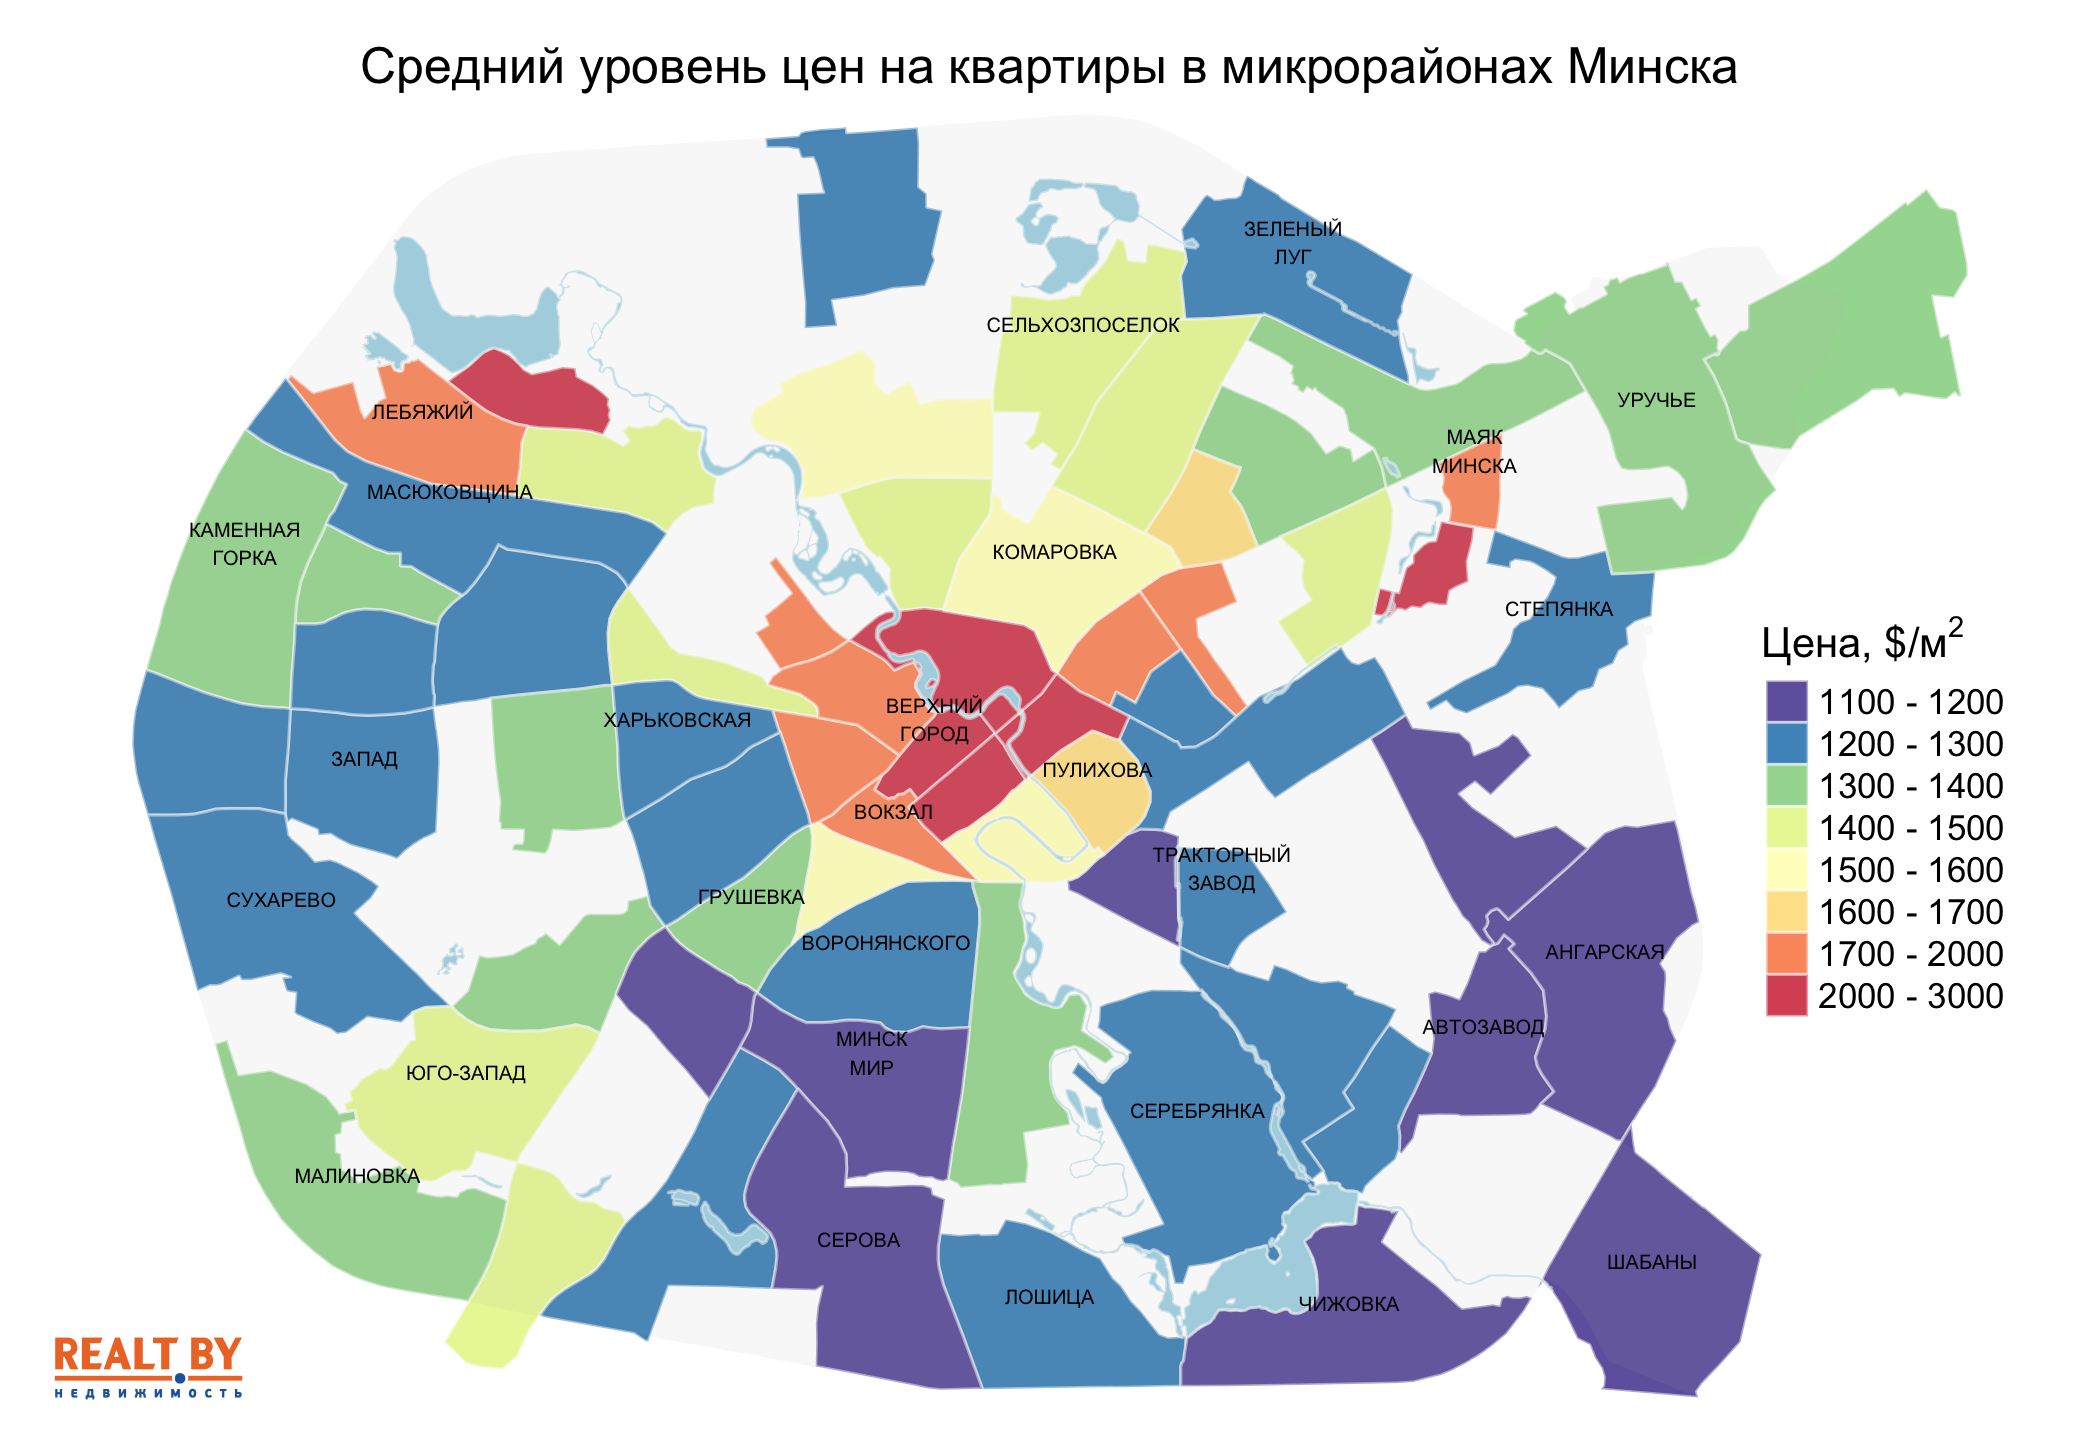 Мониторинг цен предложения квартир в Минске за 26 апреля — 3 мая 2021 года